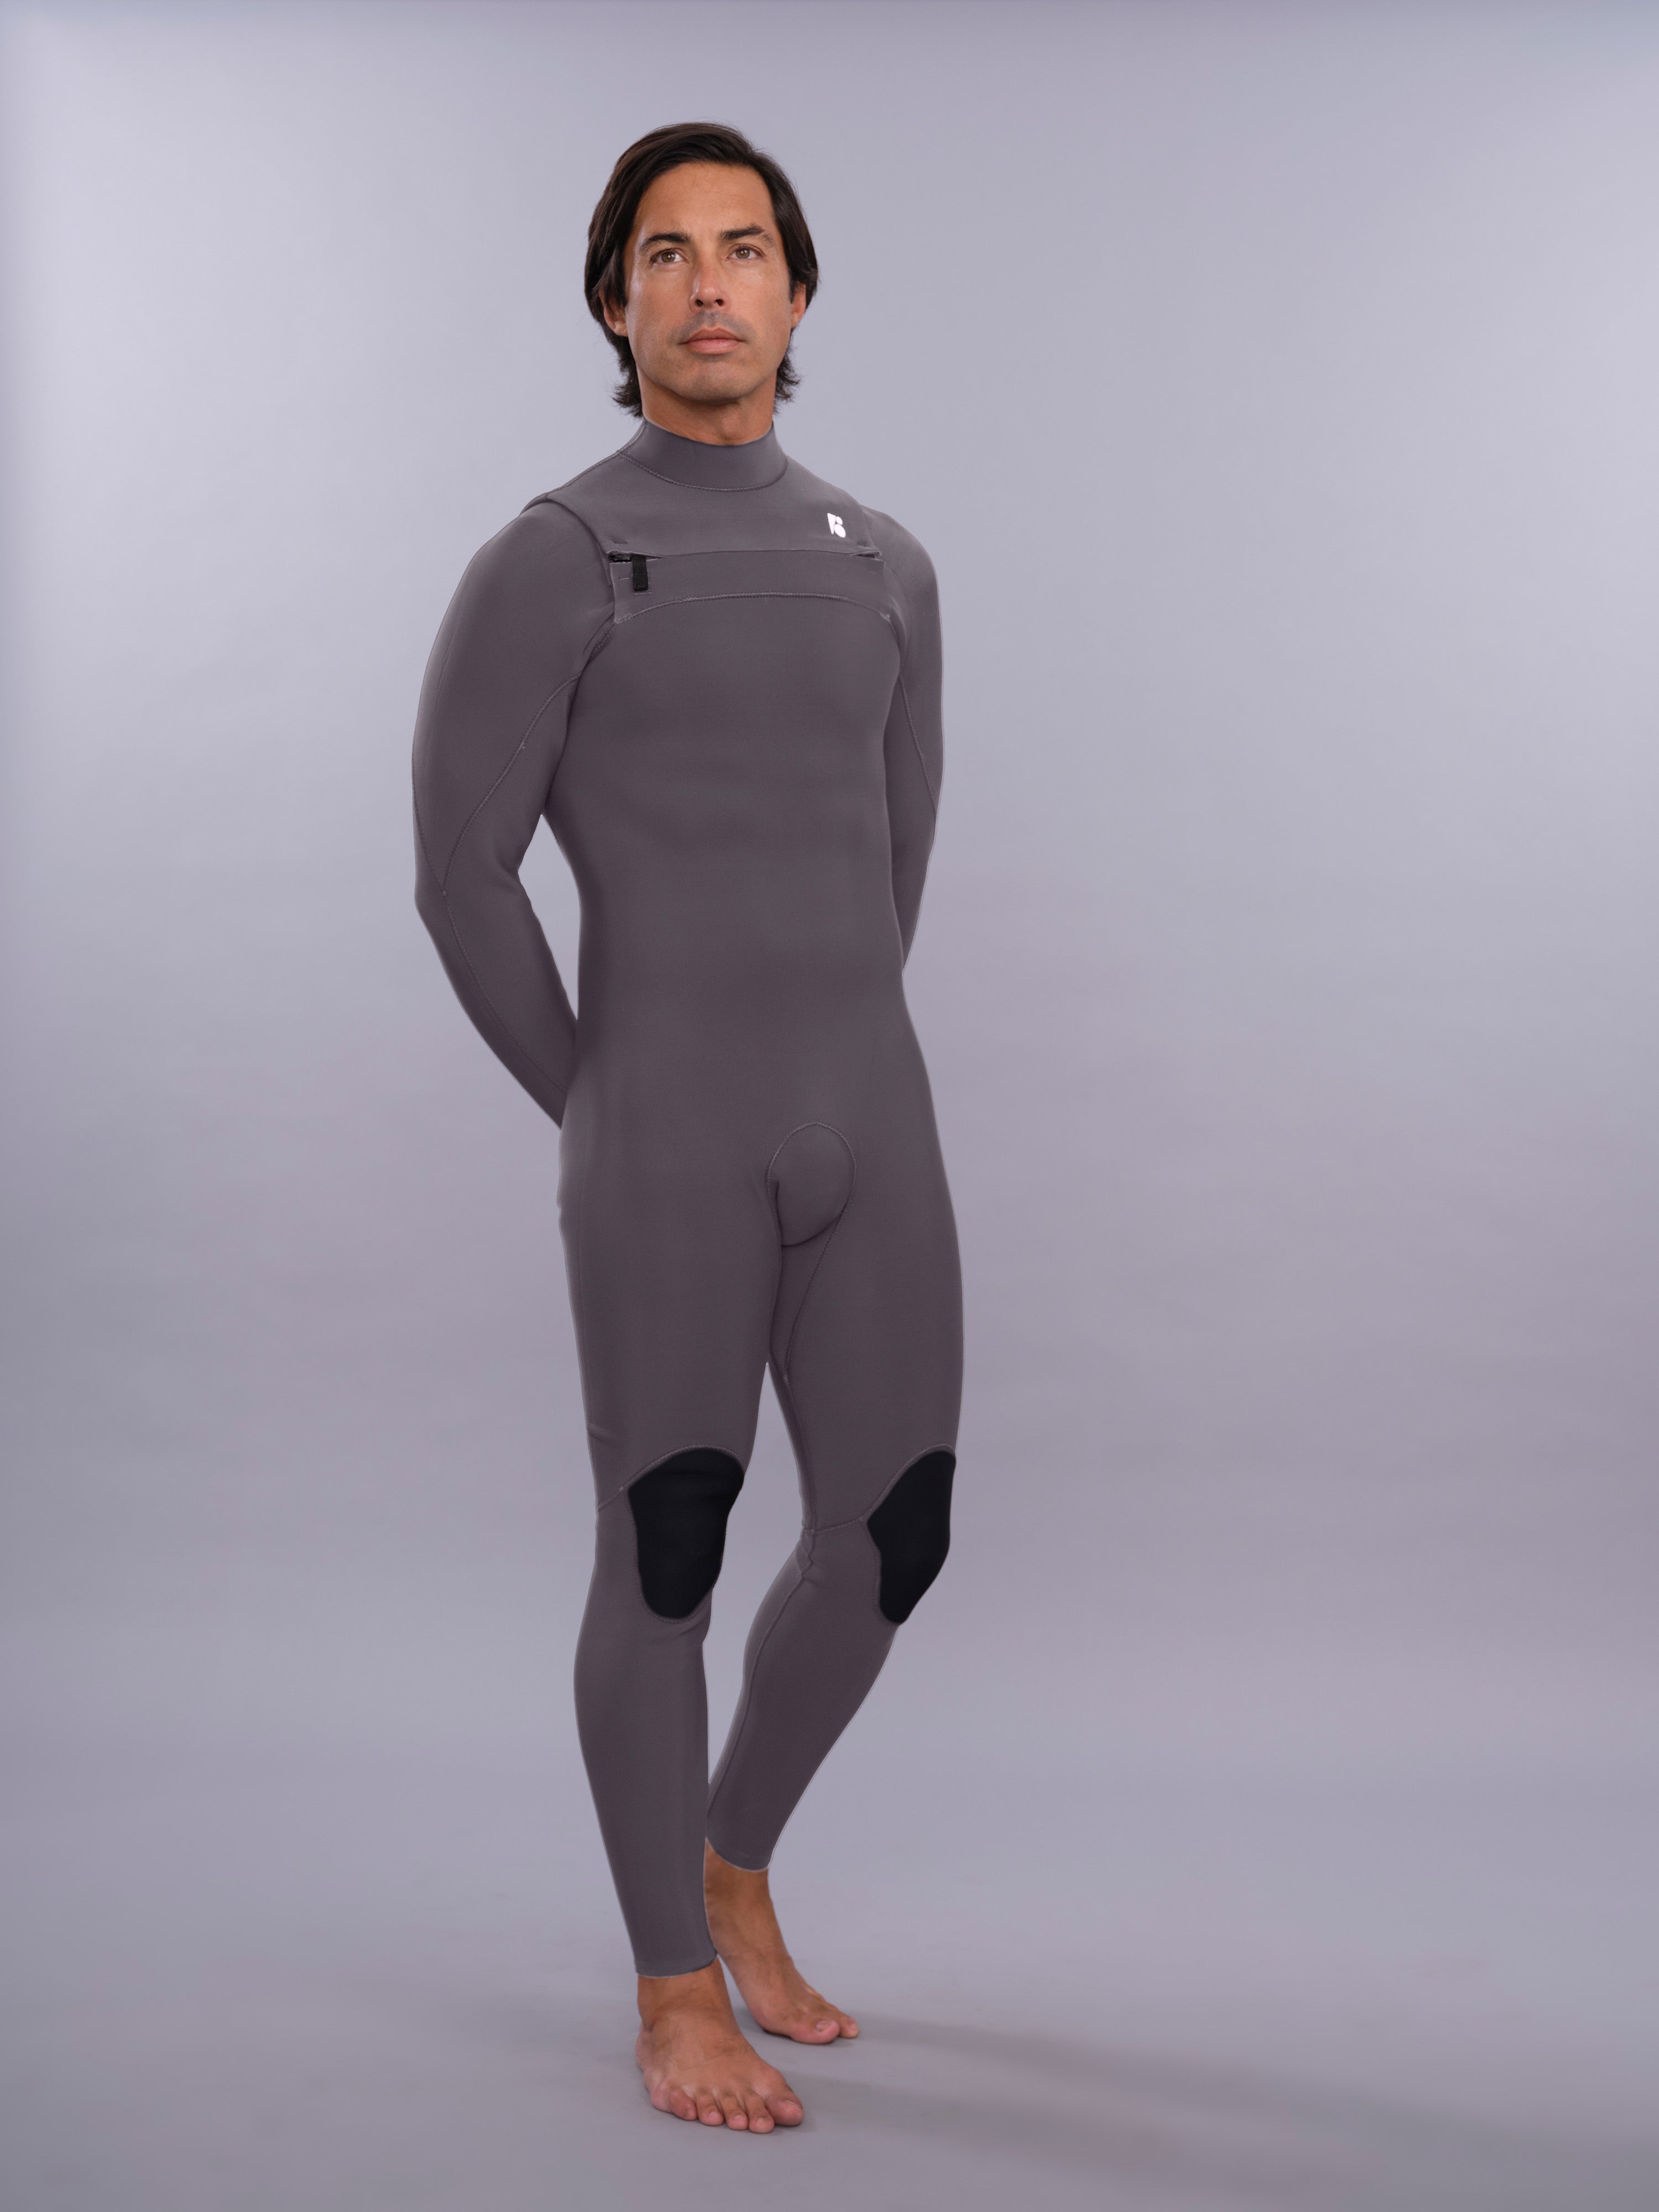 Custom Mens Surf Fullsuit